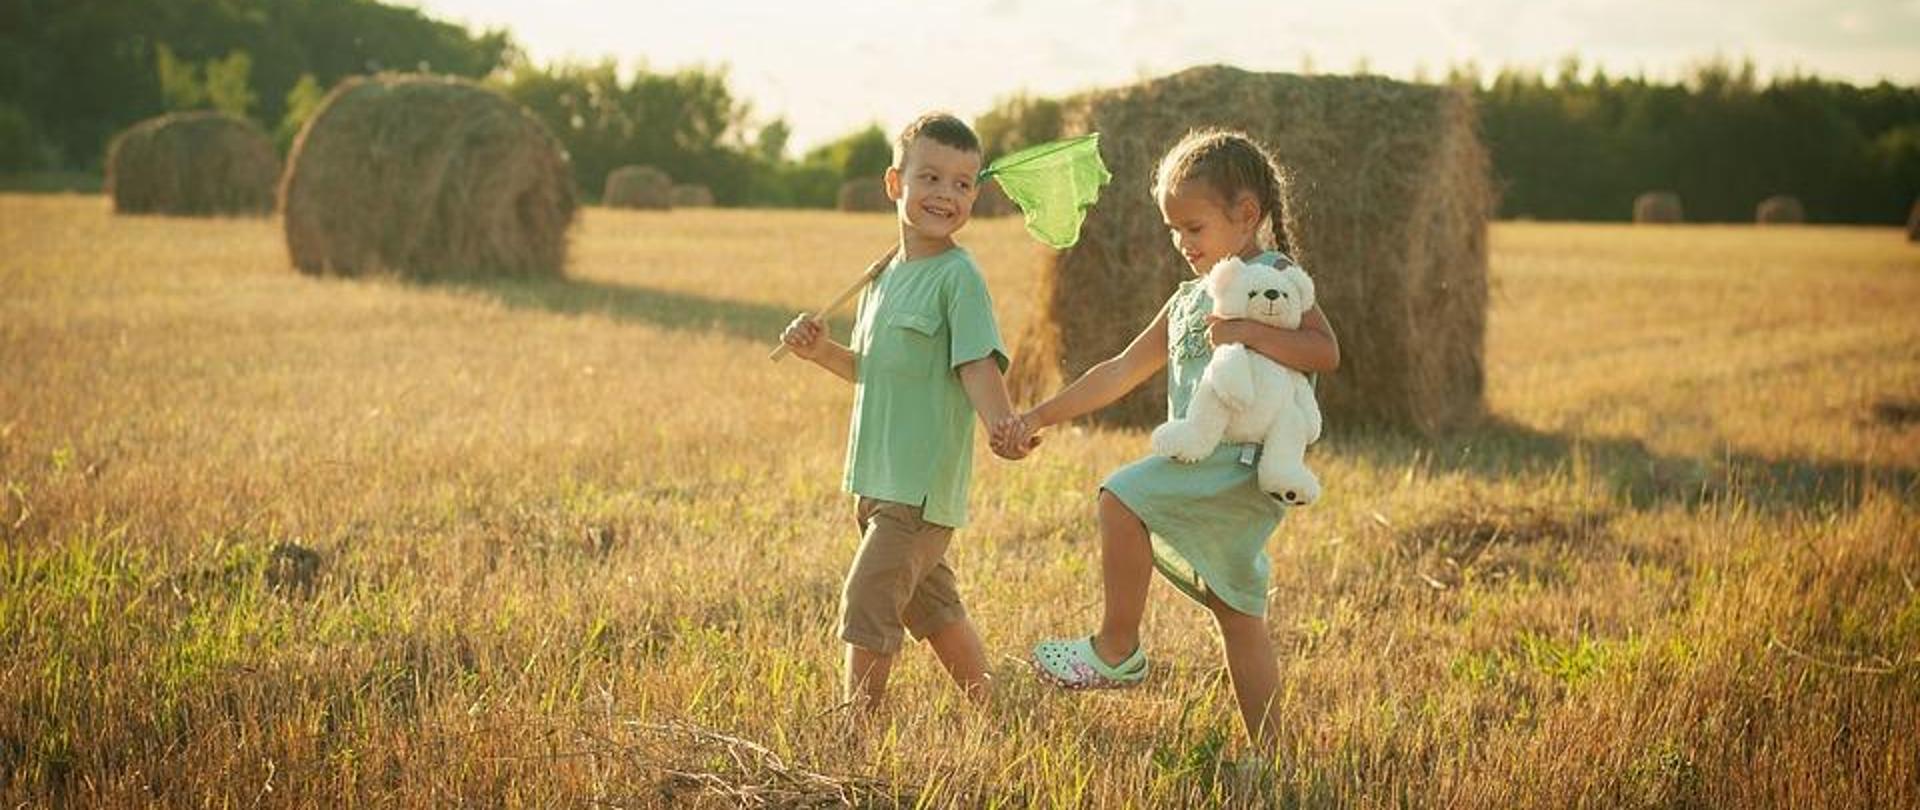 dwoje dzieci chłopczyk i dziewczynka idą przez pole trzymając się za ręce